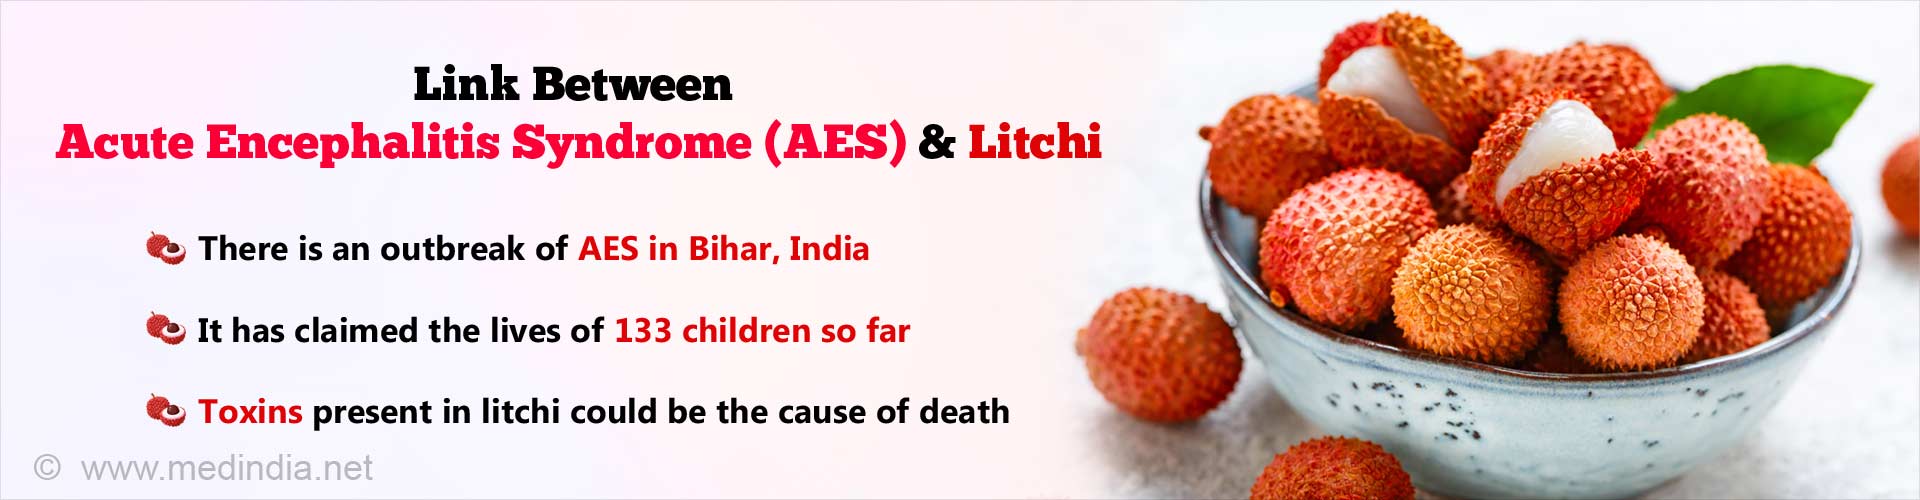 荔枝与急性脑炎综合征(AES)的关系。印度比哈尔邦爆发了AES。到目前为止，已有133名儿童丧生。荔枝中的毒素可能会导致死亡。